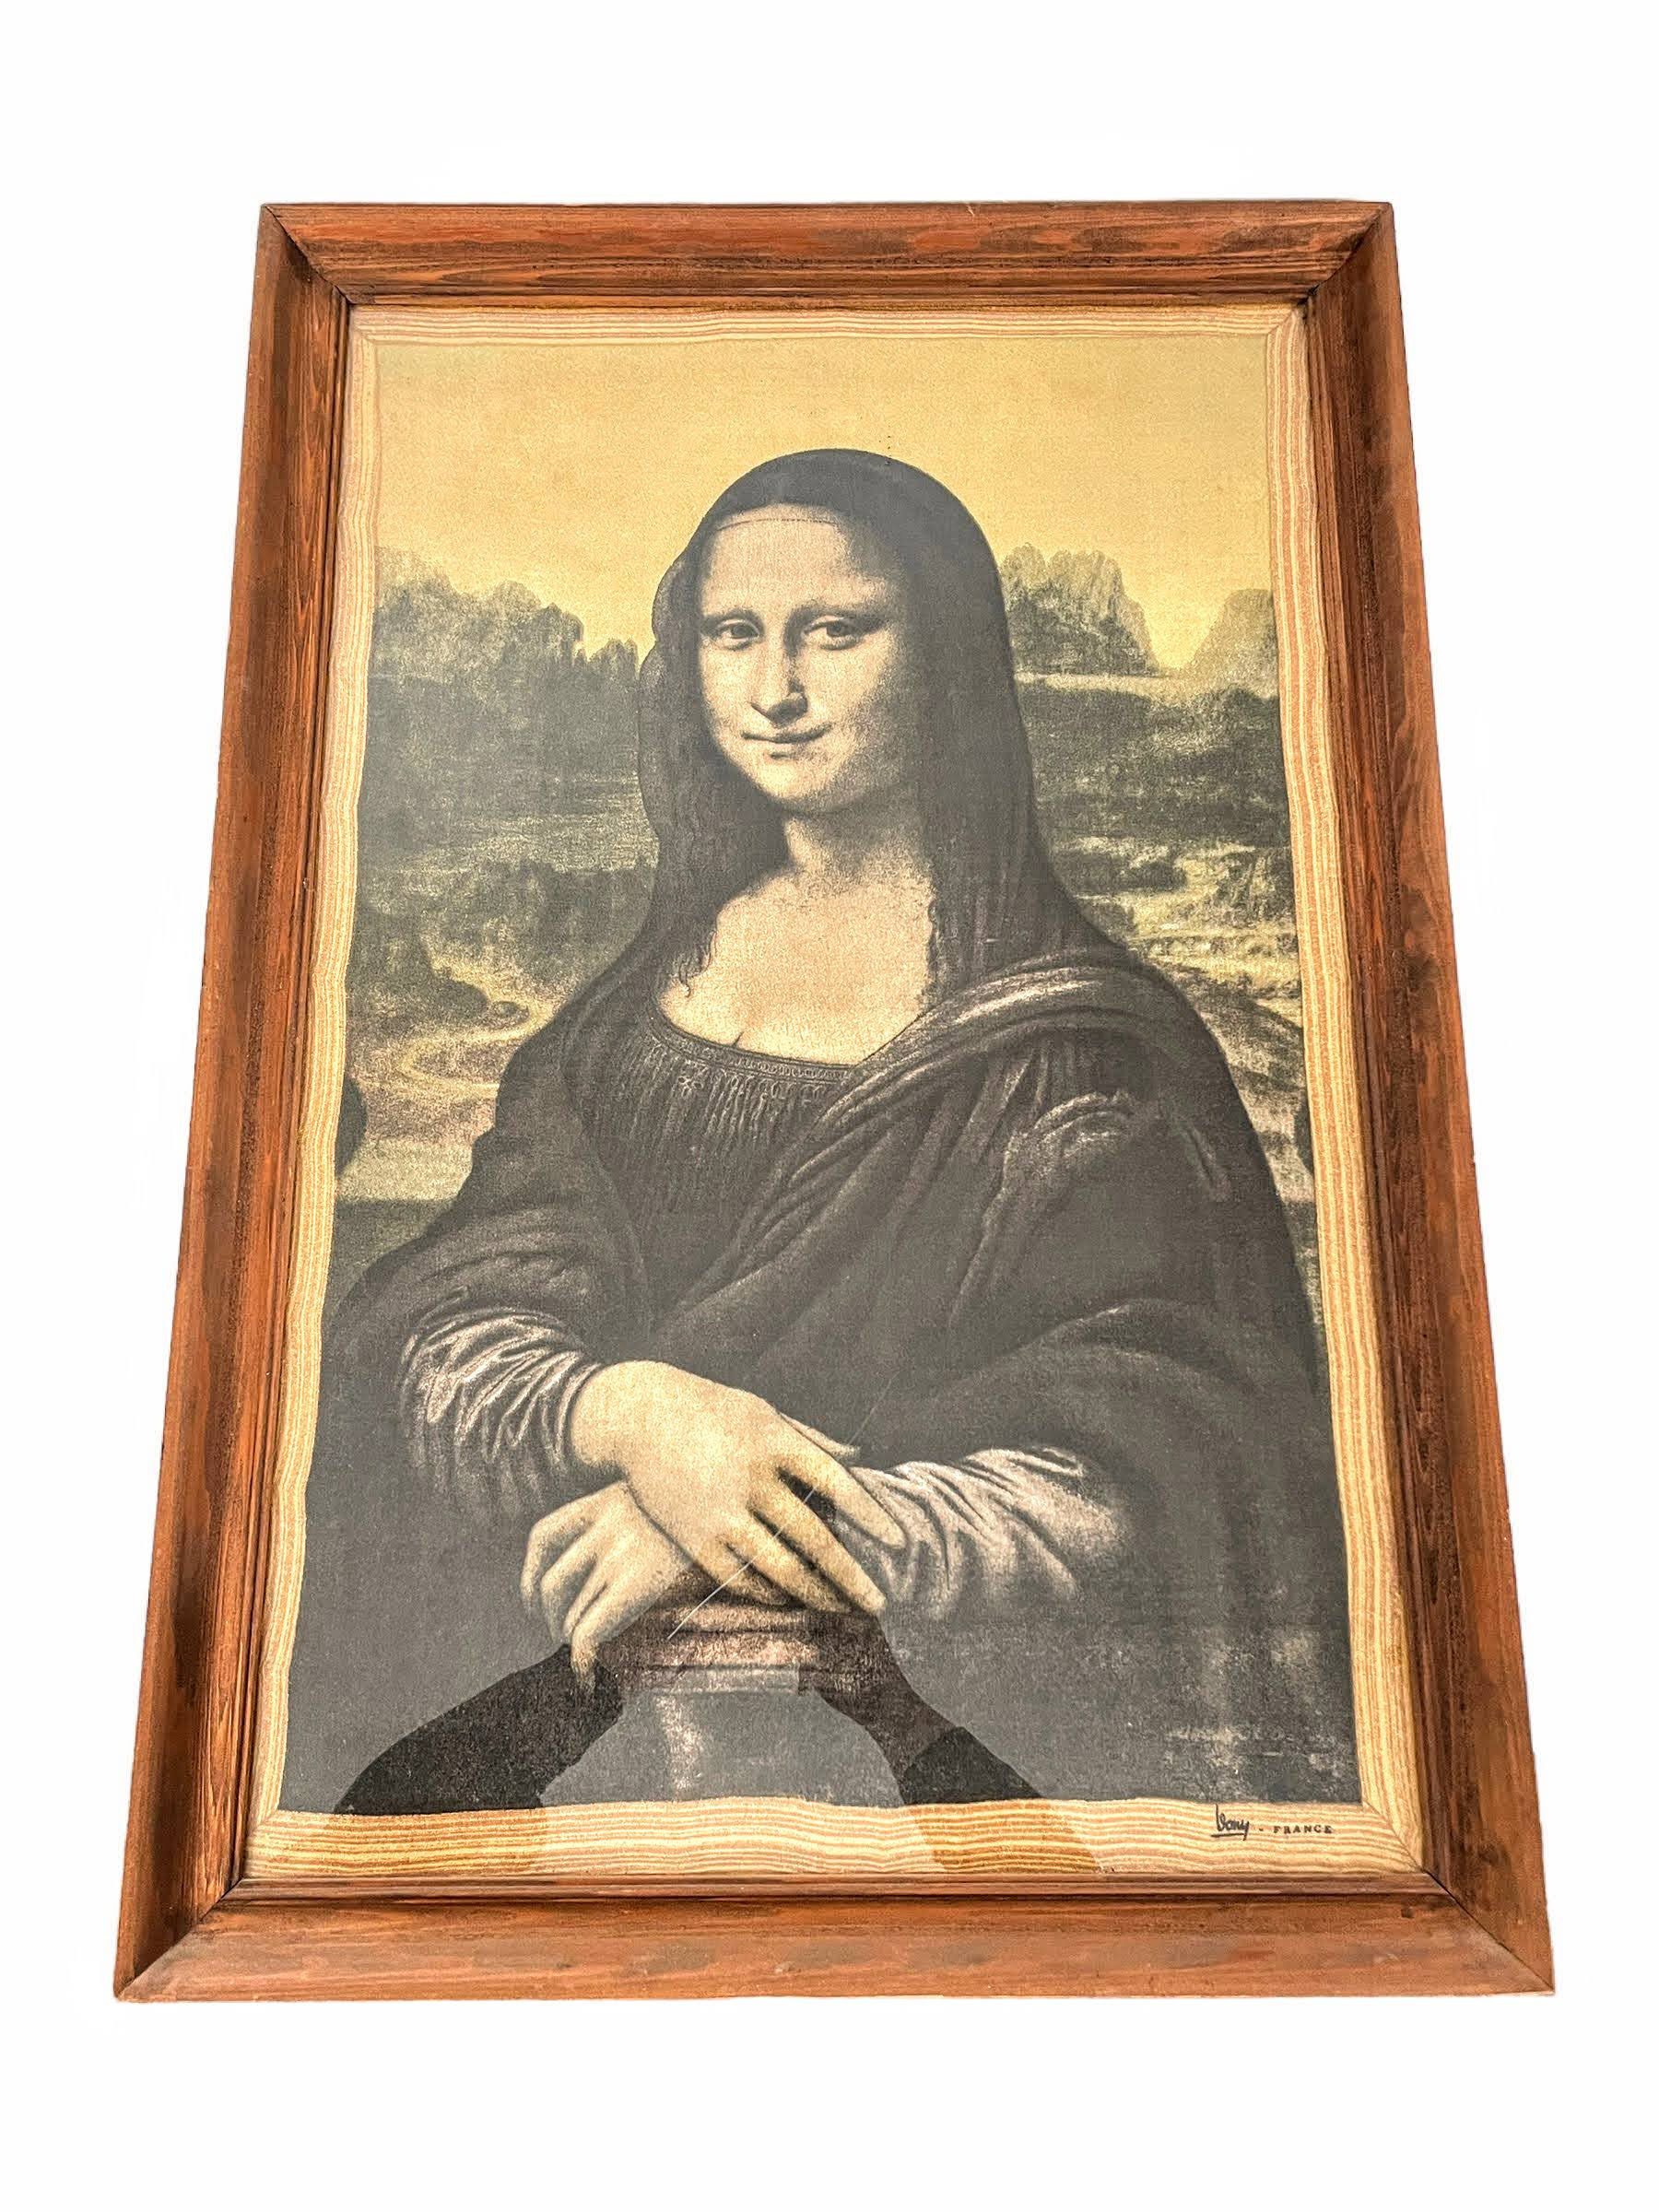 Mona Lisa by Leonardo Da Vinci Da Vinci Wall Art Classic -  Canada